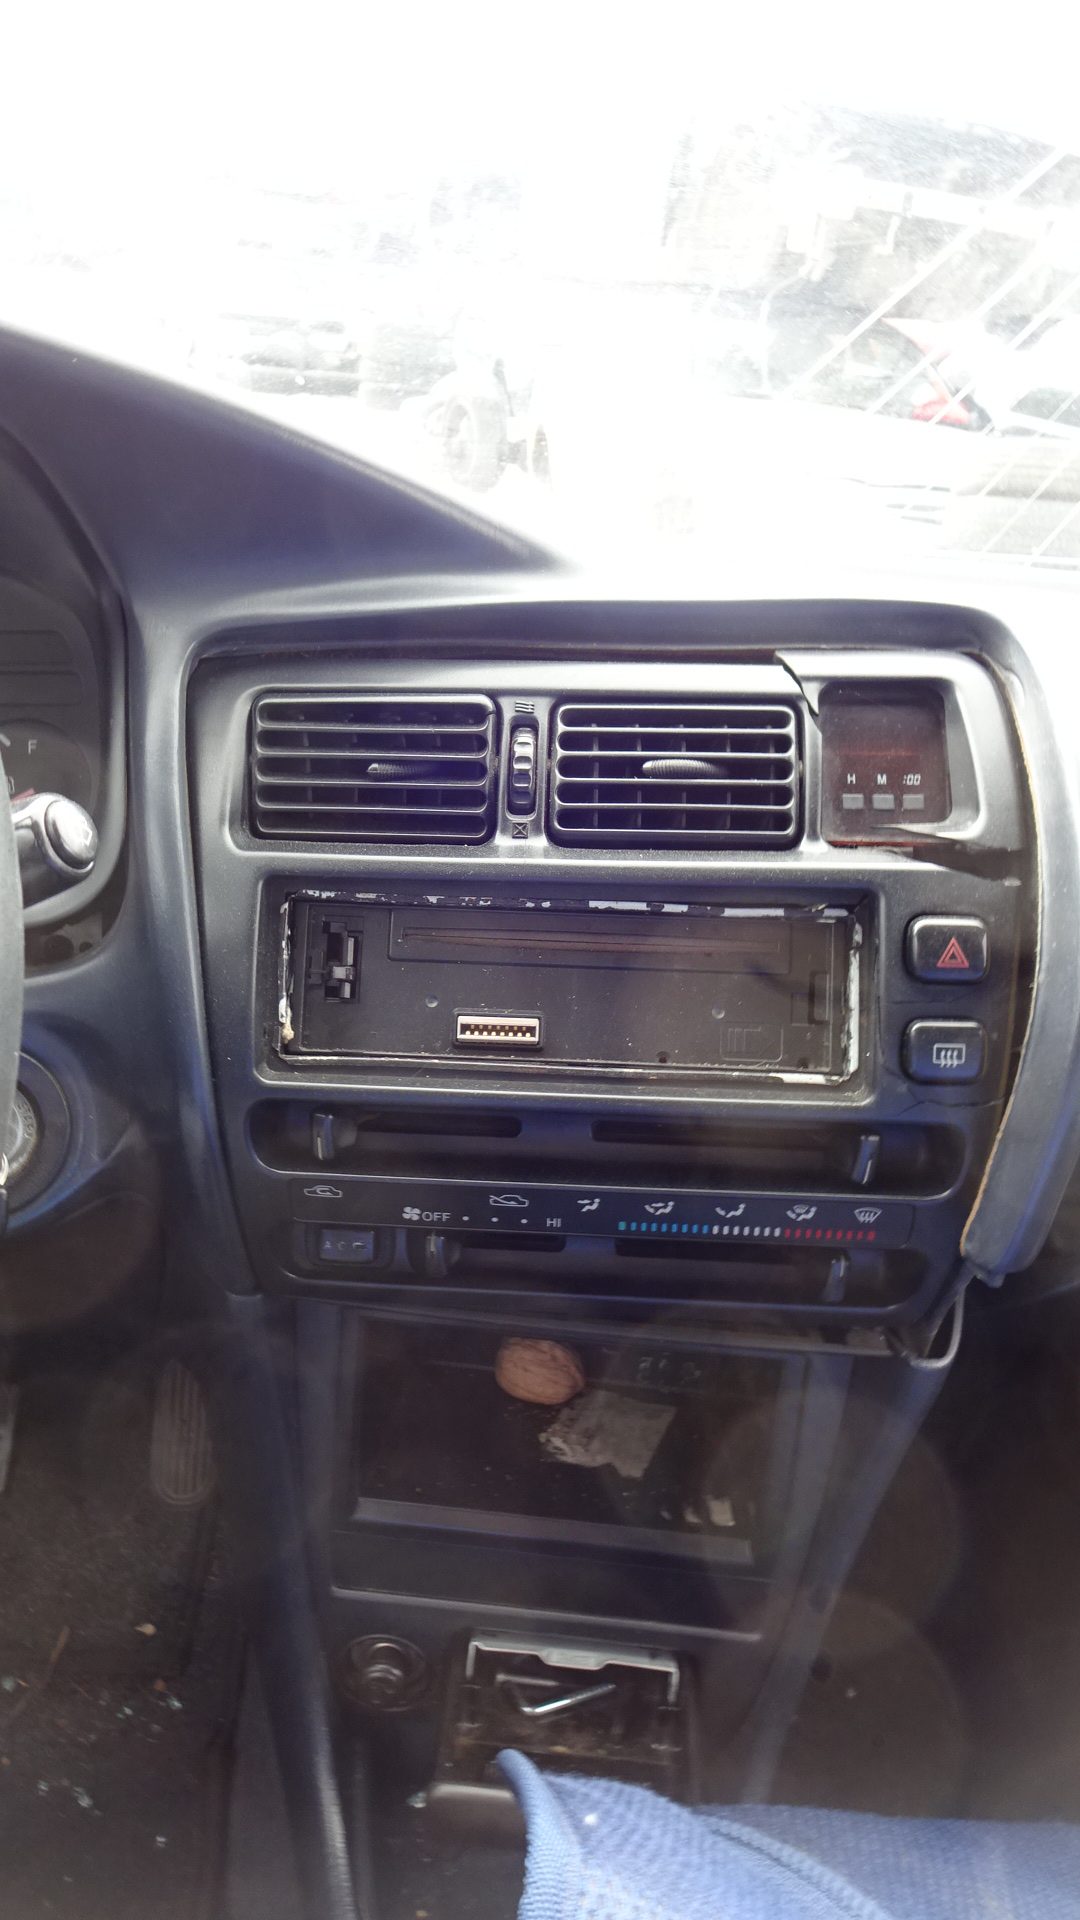 Χειριστήρια Κλιματισμού-Καλοριφέρ Toyota Corolla ’97 Προσφορά.